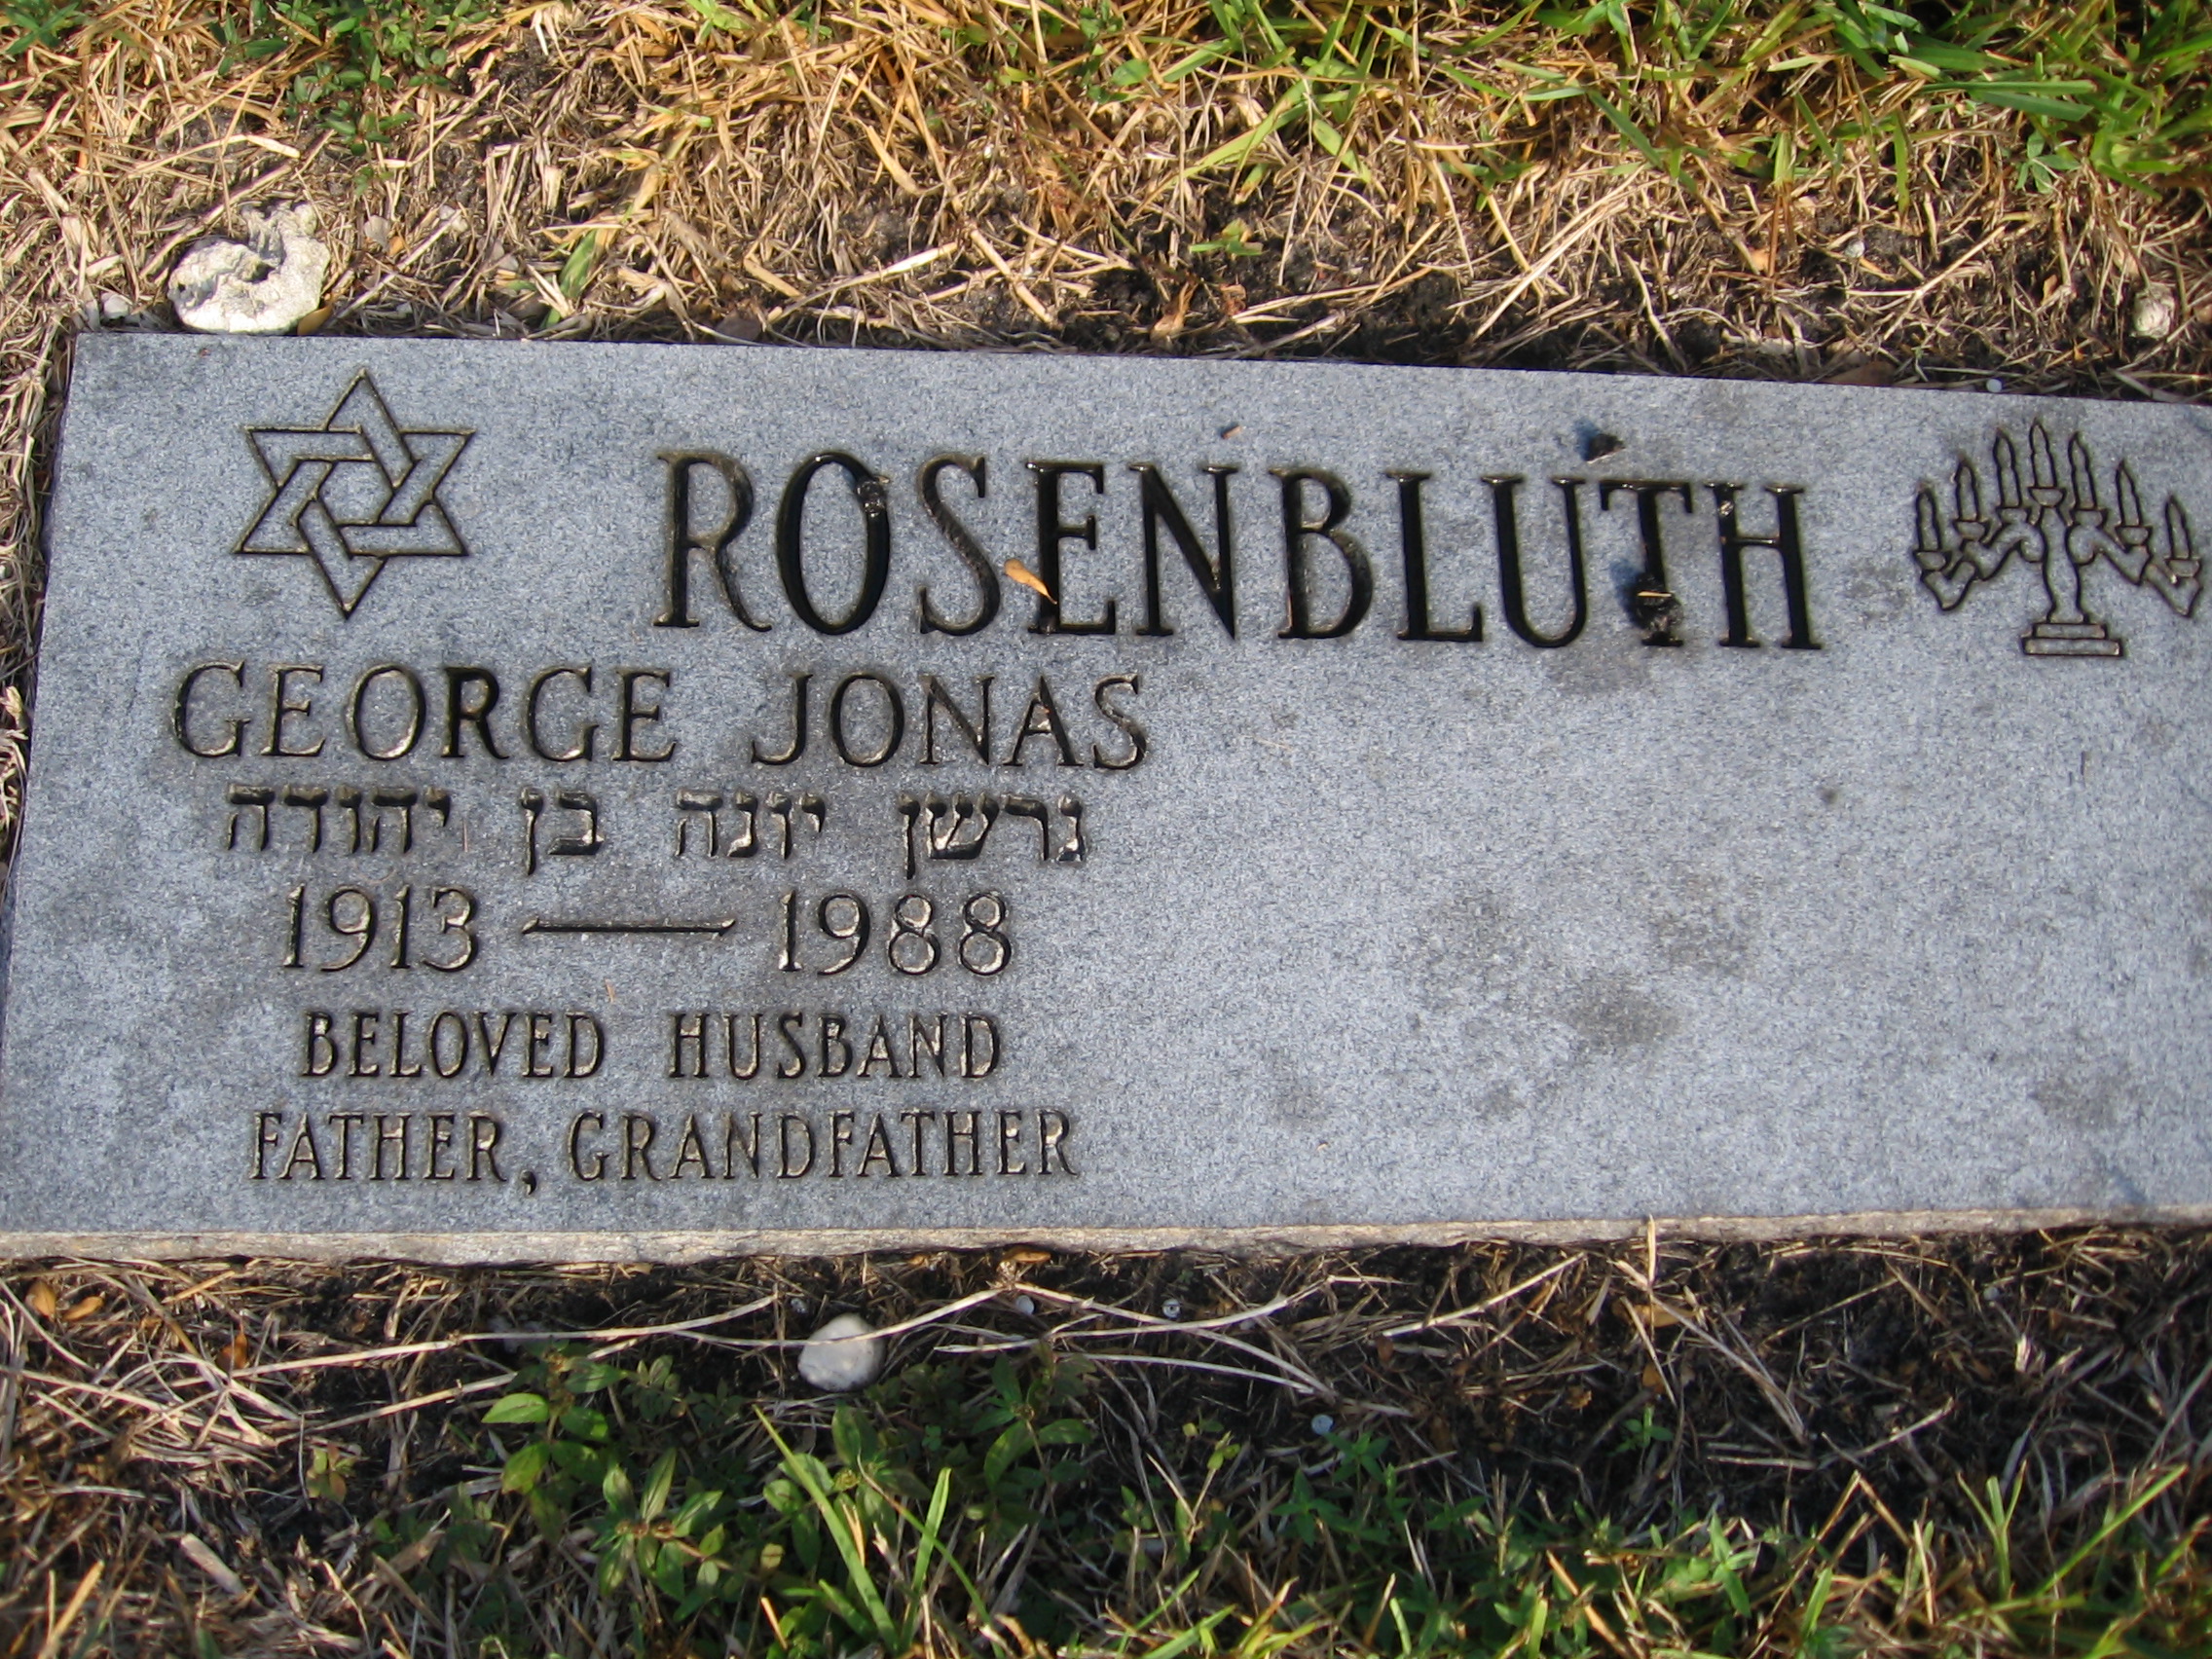 George Jonas Rosenbluth